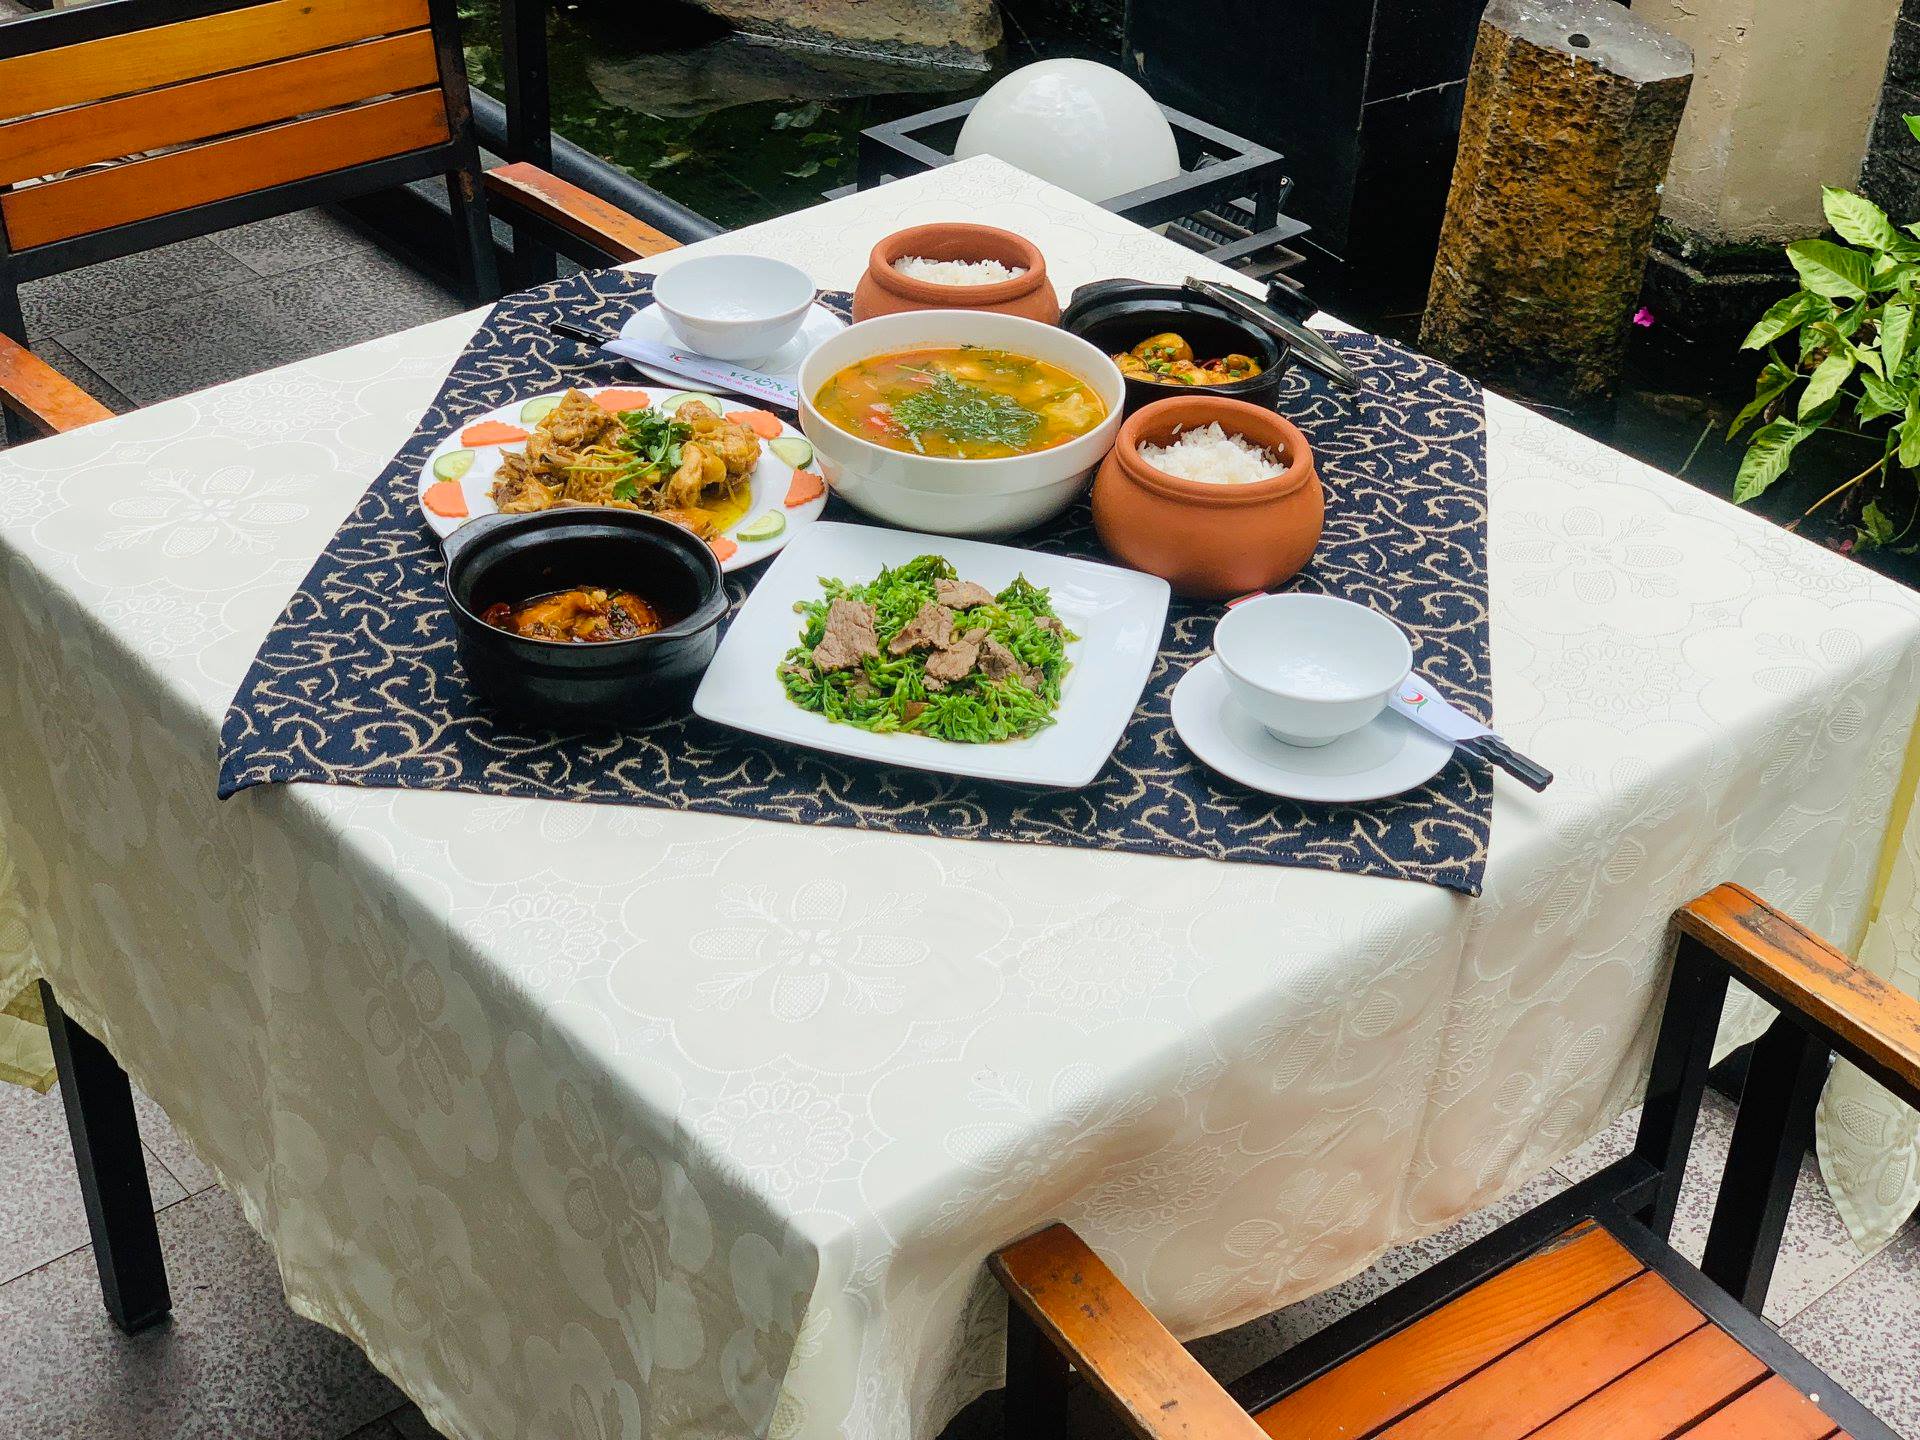 Đến ngay quán ăn sân vườn Gò Vấp để thưởng thức những món ngon độc đáo, từ việt nam truyền thống đến ẩm thực quốc tế, cùng với không gian xanh mát và yên bình đặc trưng của quán.